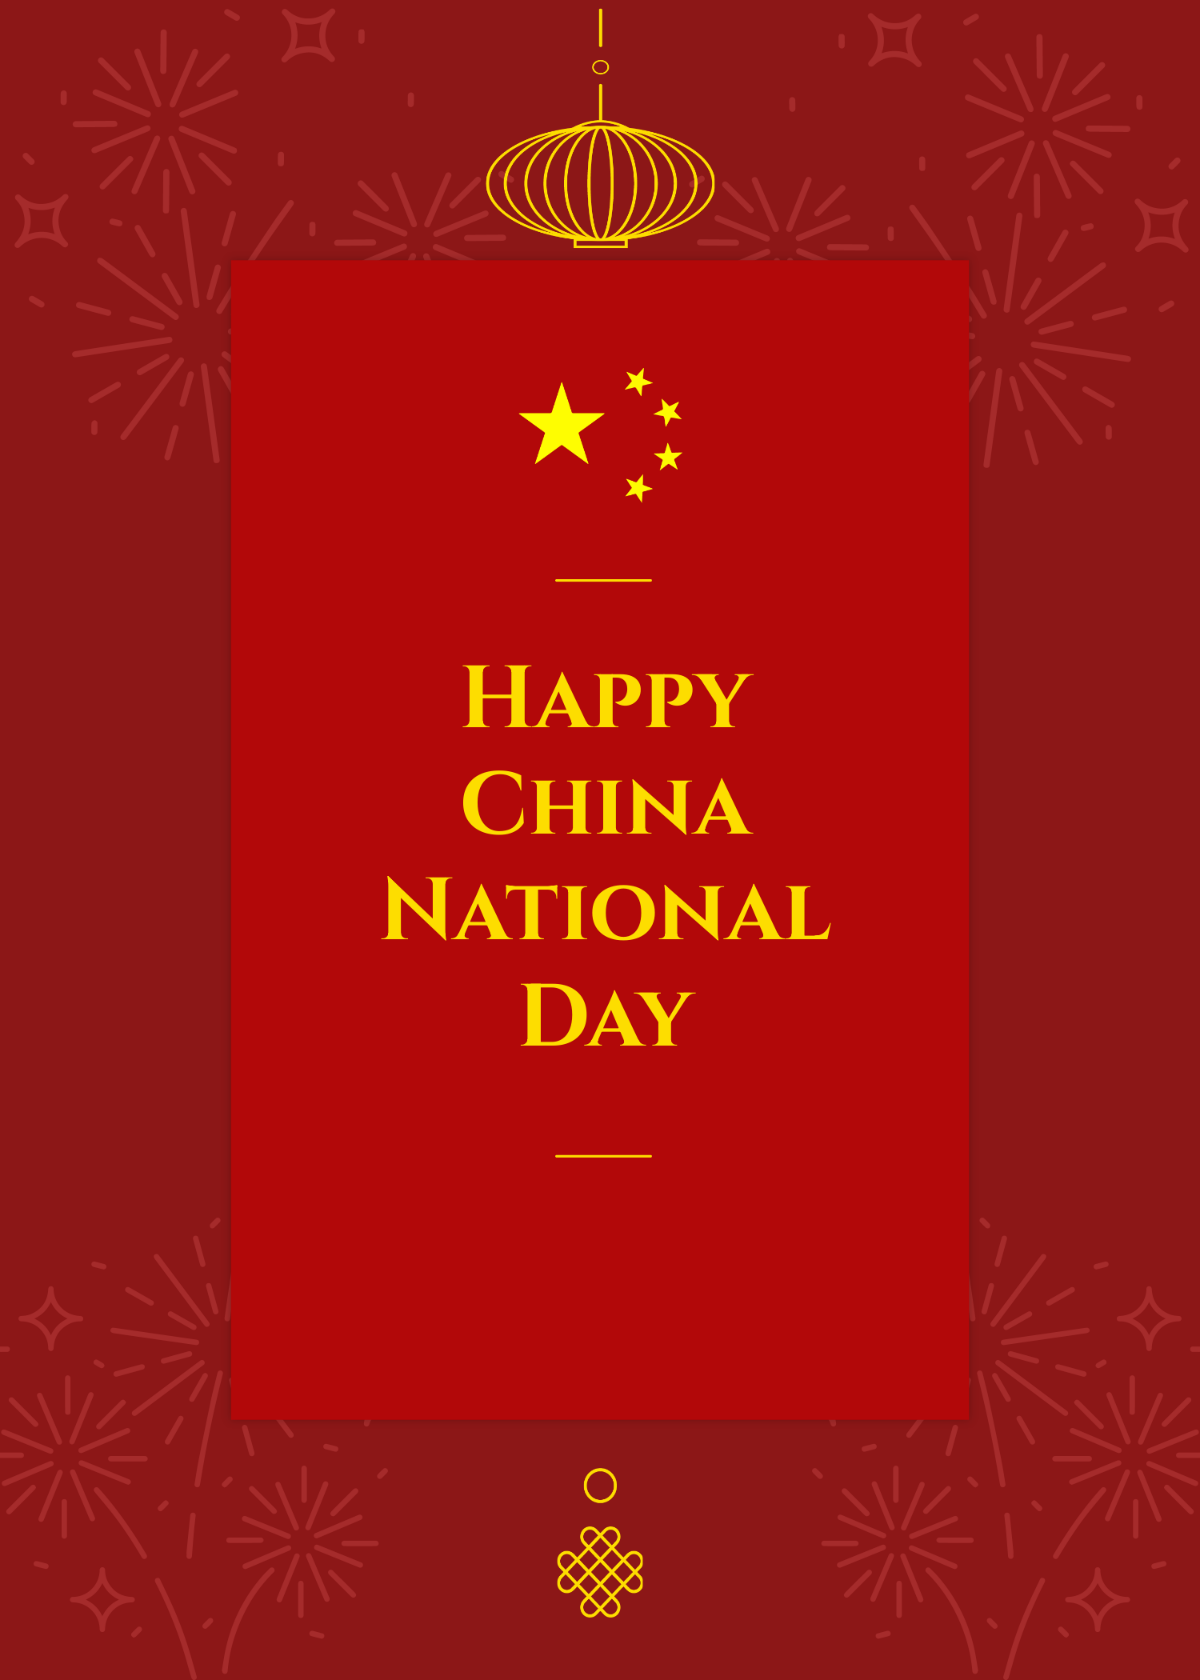 China National Day Greeting Card